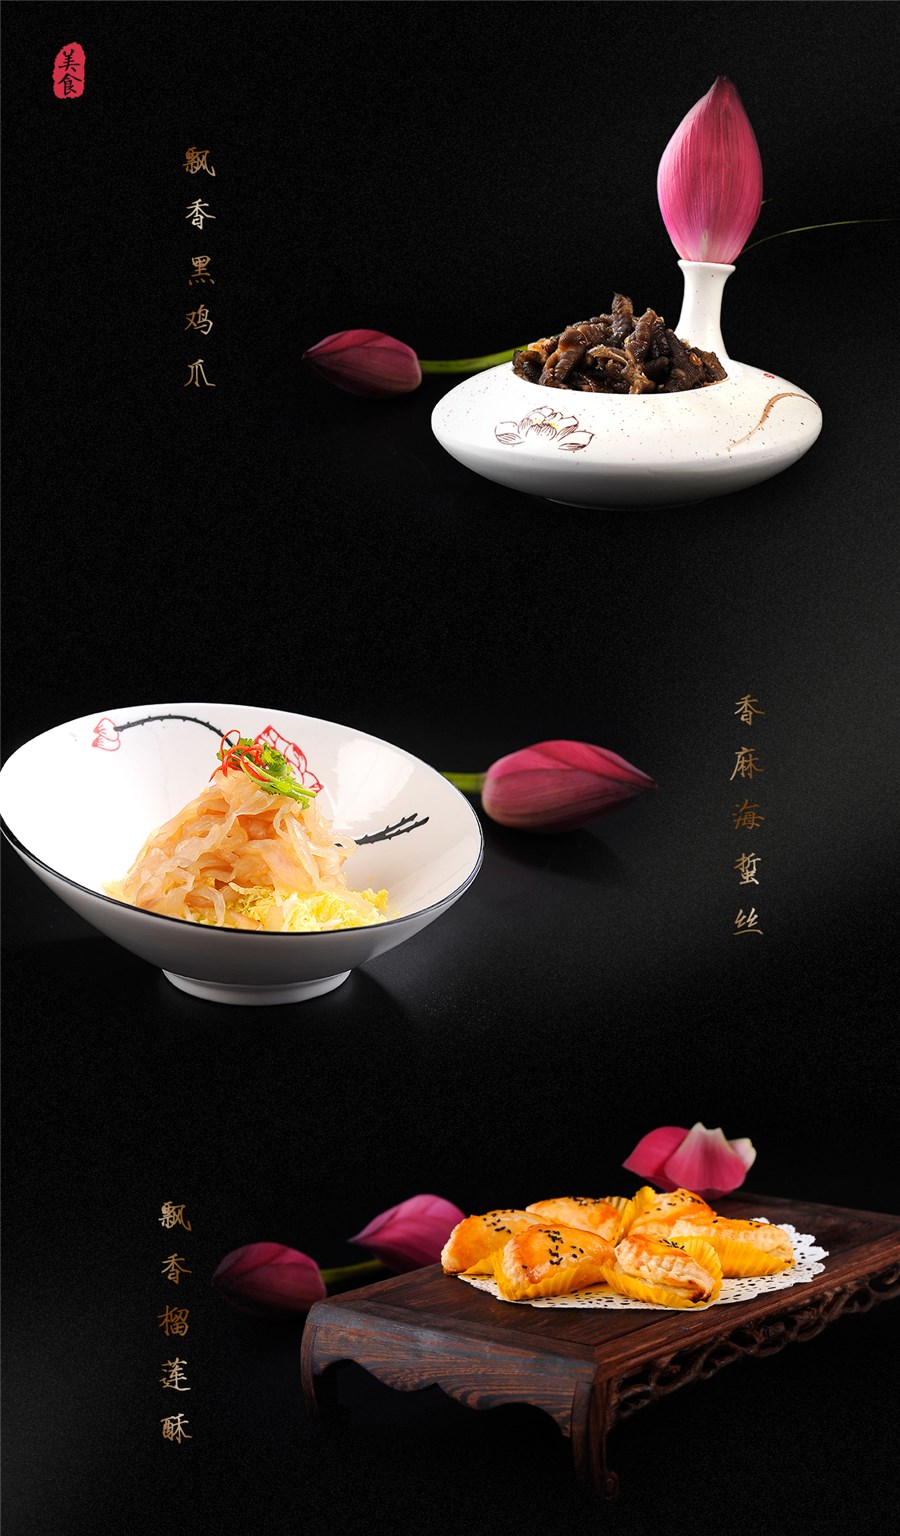 中式餐饮菜肴拍摄 菜谱摄影 菜单拍照设计